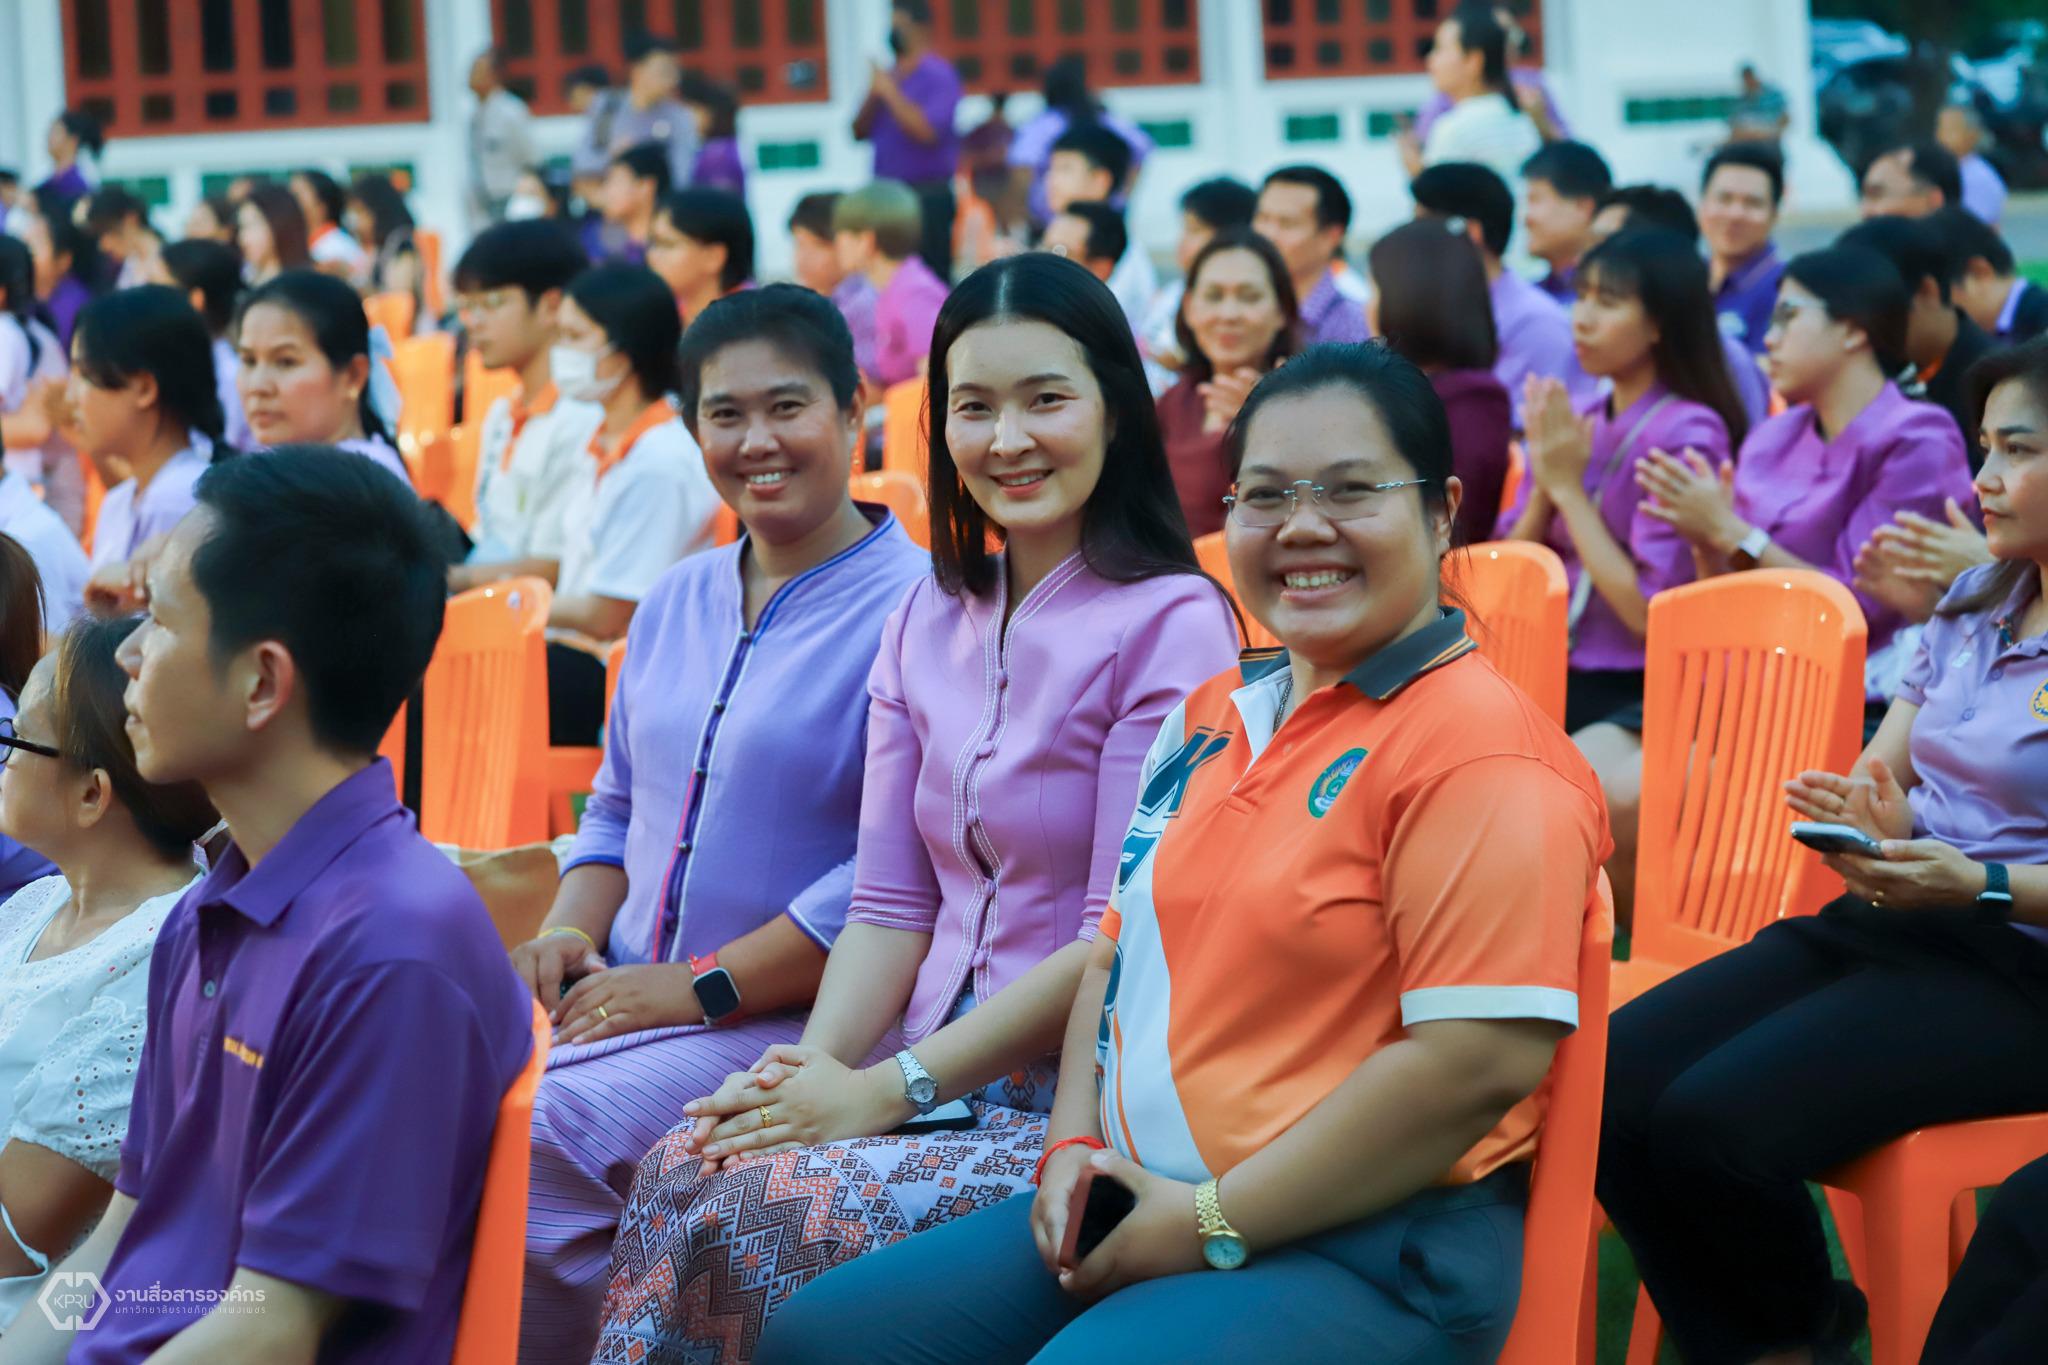 4. วันอนุรักษ์มรดกไทย เพื่อเฉลิมพระเกียรติสมเด็จพระกนิษฐาธิราชเจ้า กรมสมเด็จพระเทพรัตนราชสุดาฯ สยามบรมราชกุมารี